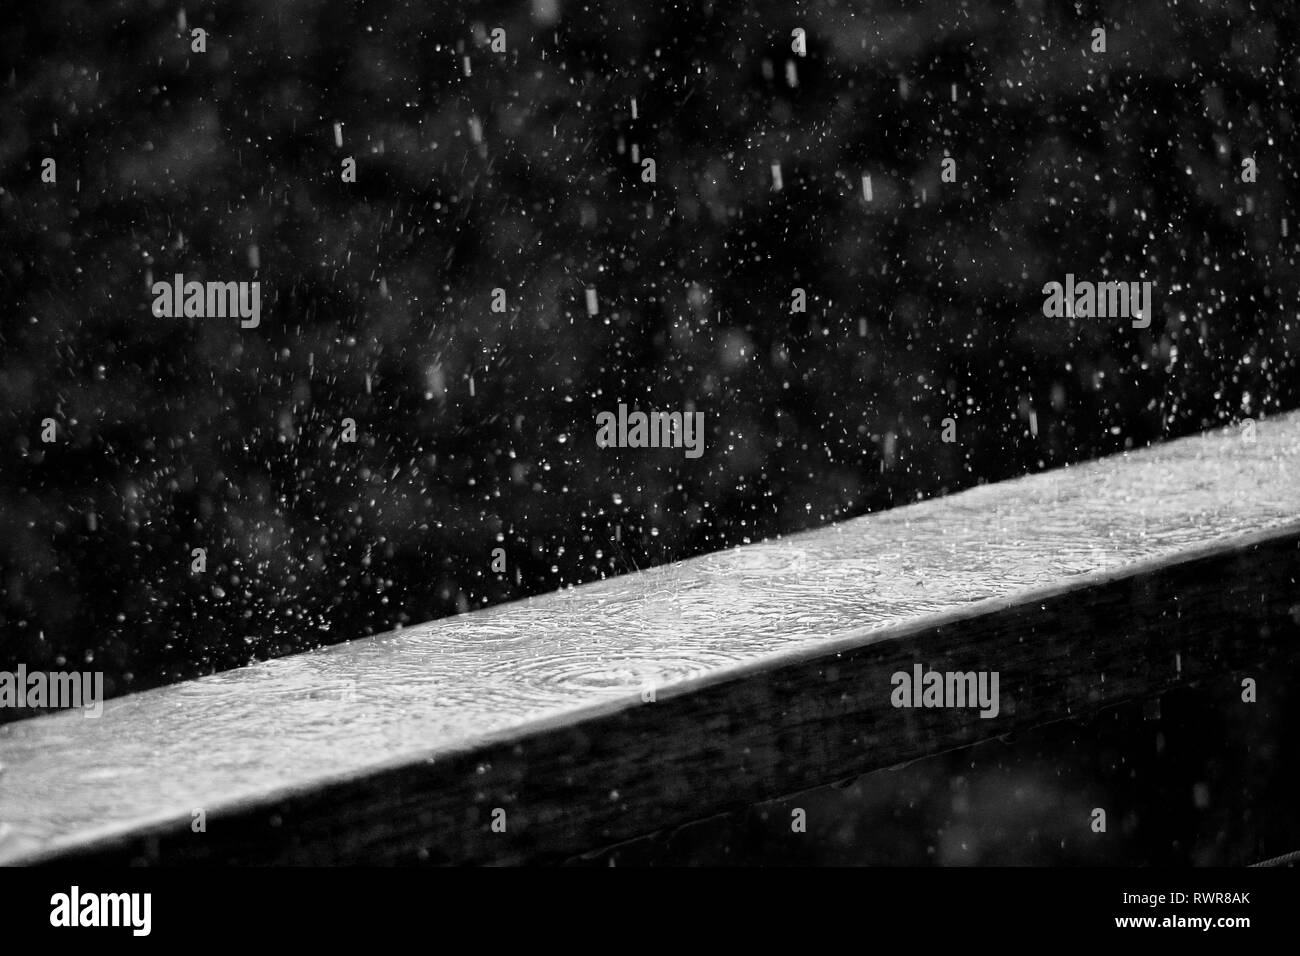 La pluie frappant une planche en bois au cours d'une tempête avec des gouttes de pluie qui rebondit. Banque D'Images